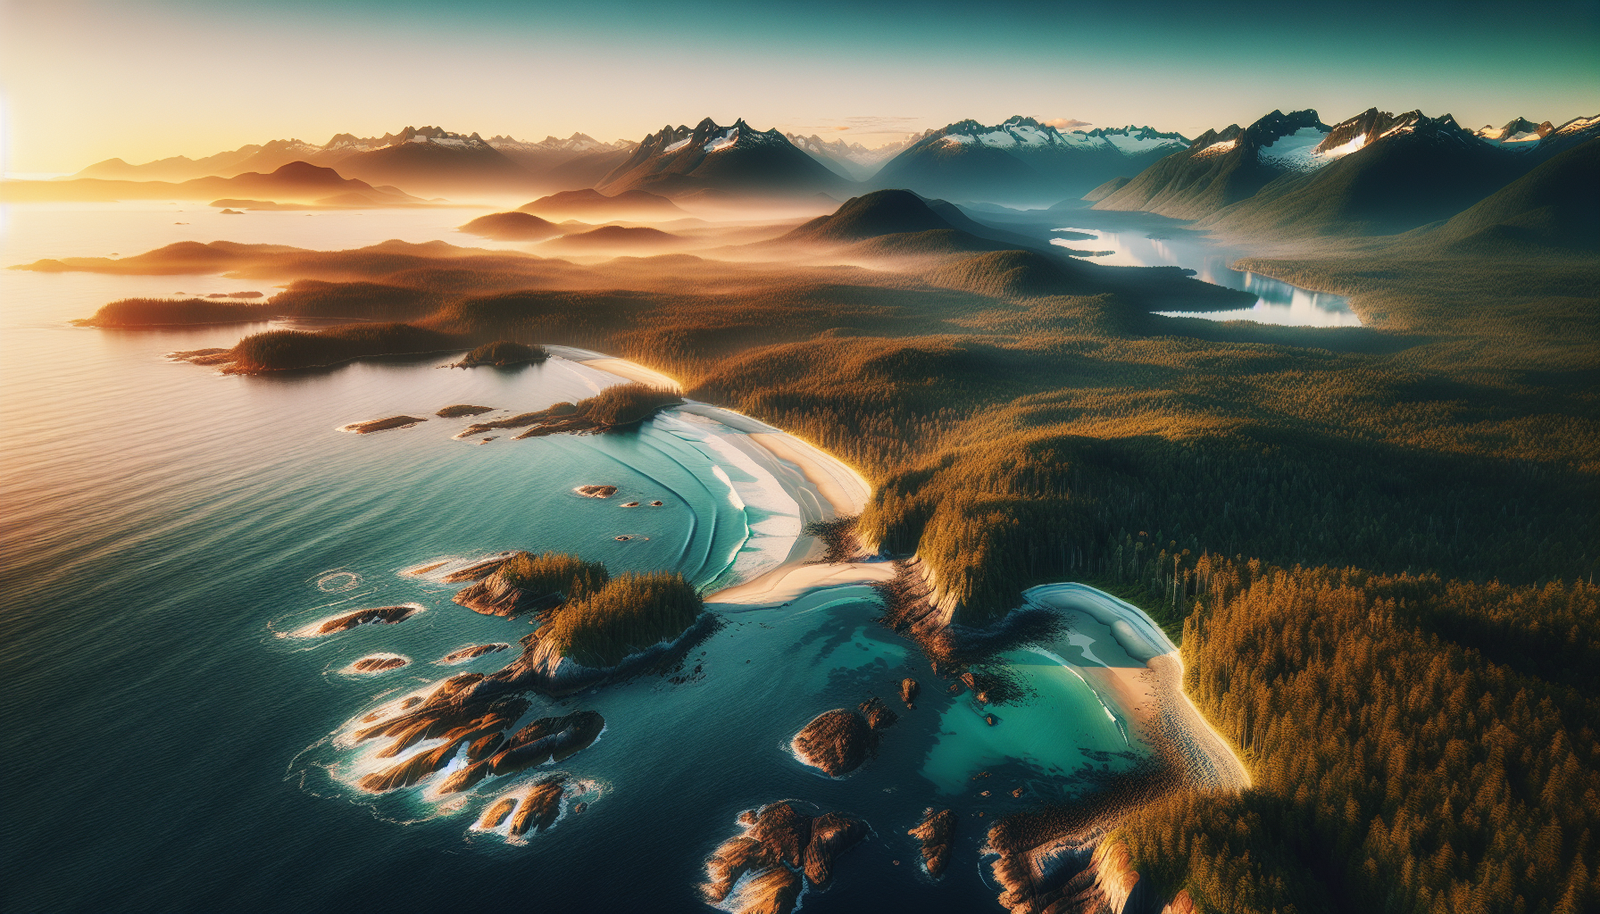 Aerial view of British Columbia's coastline